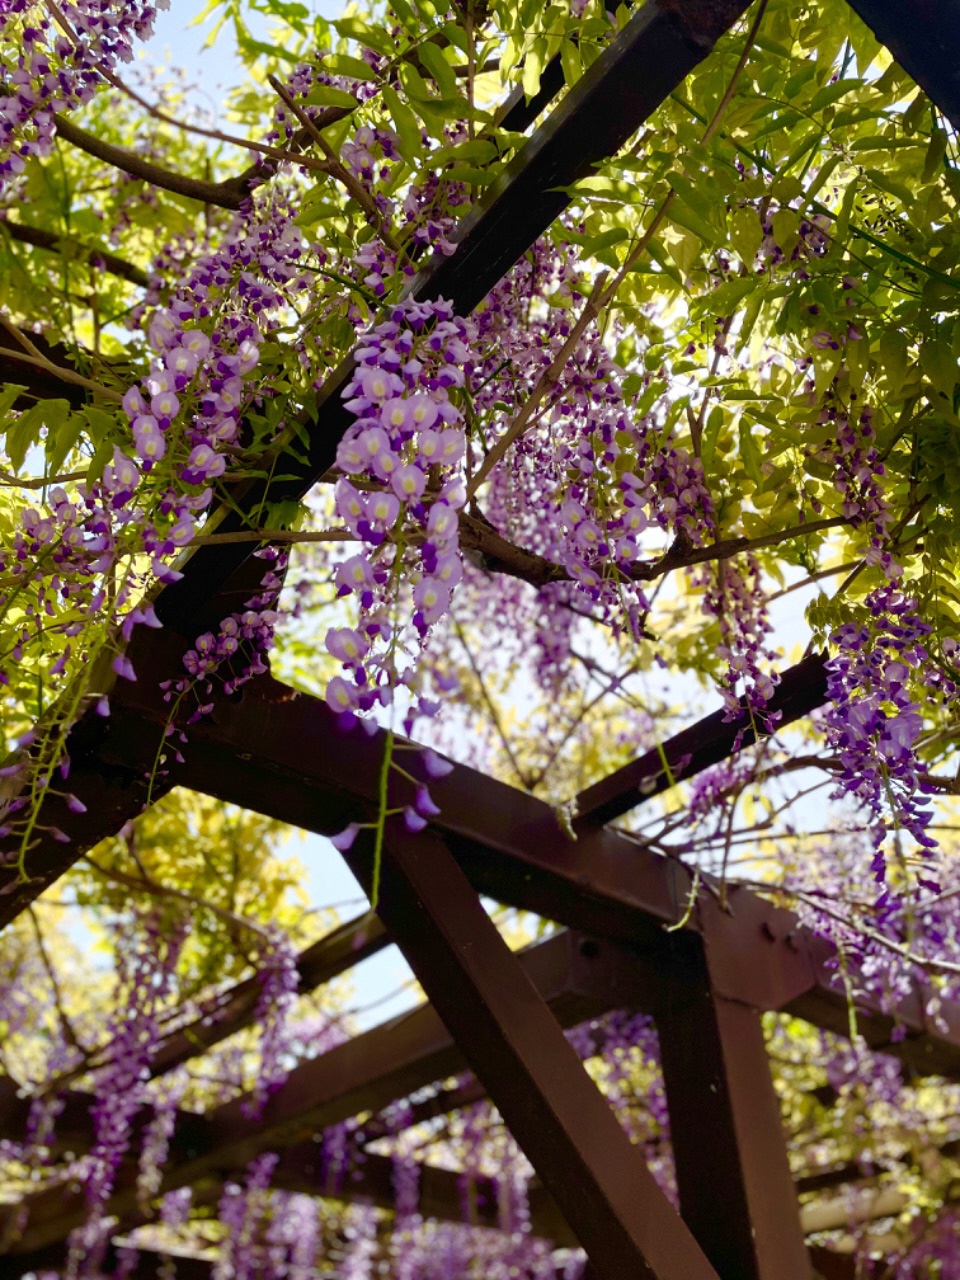 空の水色と木の緑と藤棚の薄紫が鮮やかな写真